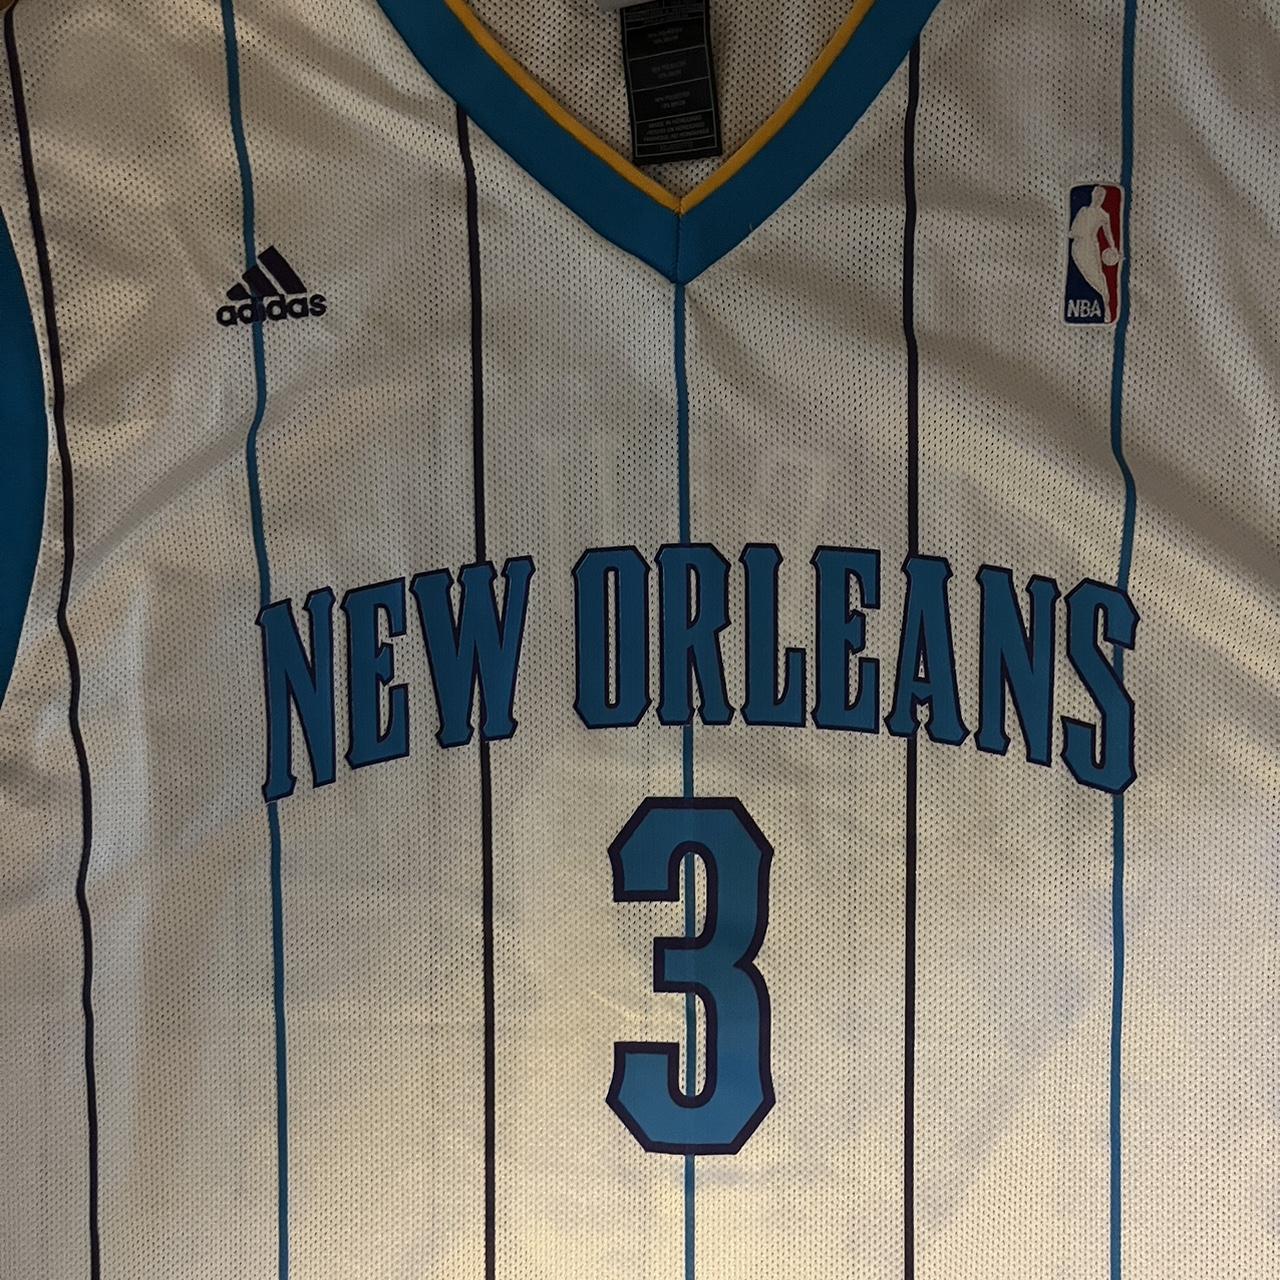 2008-2010 New Orleans Hornets Chris Paul Jersey. - Depop